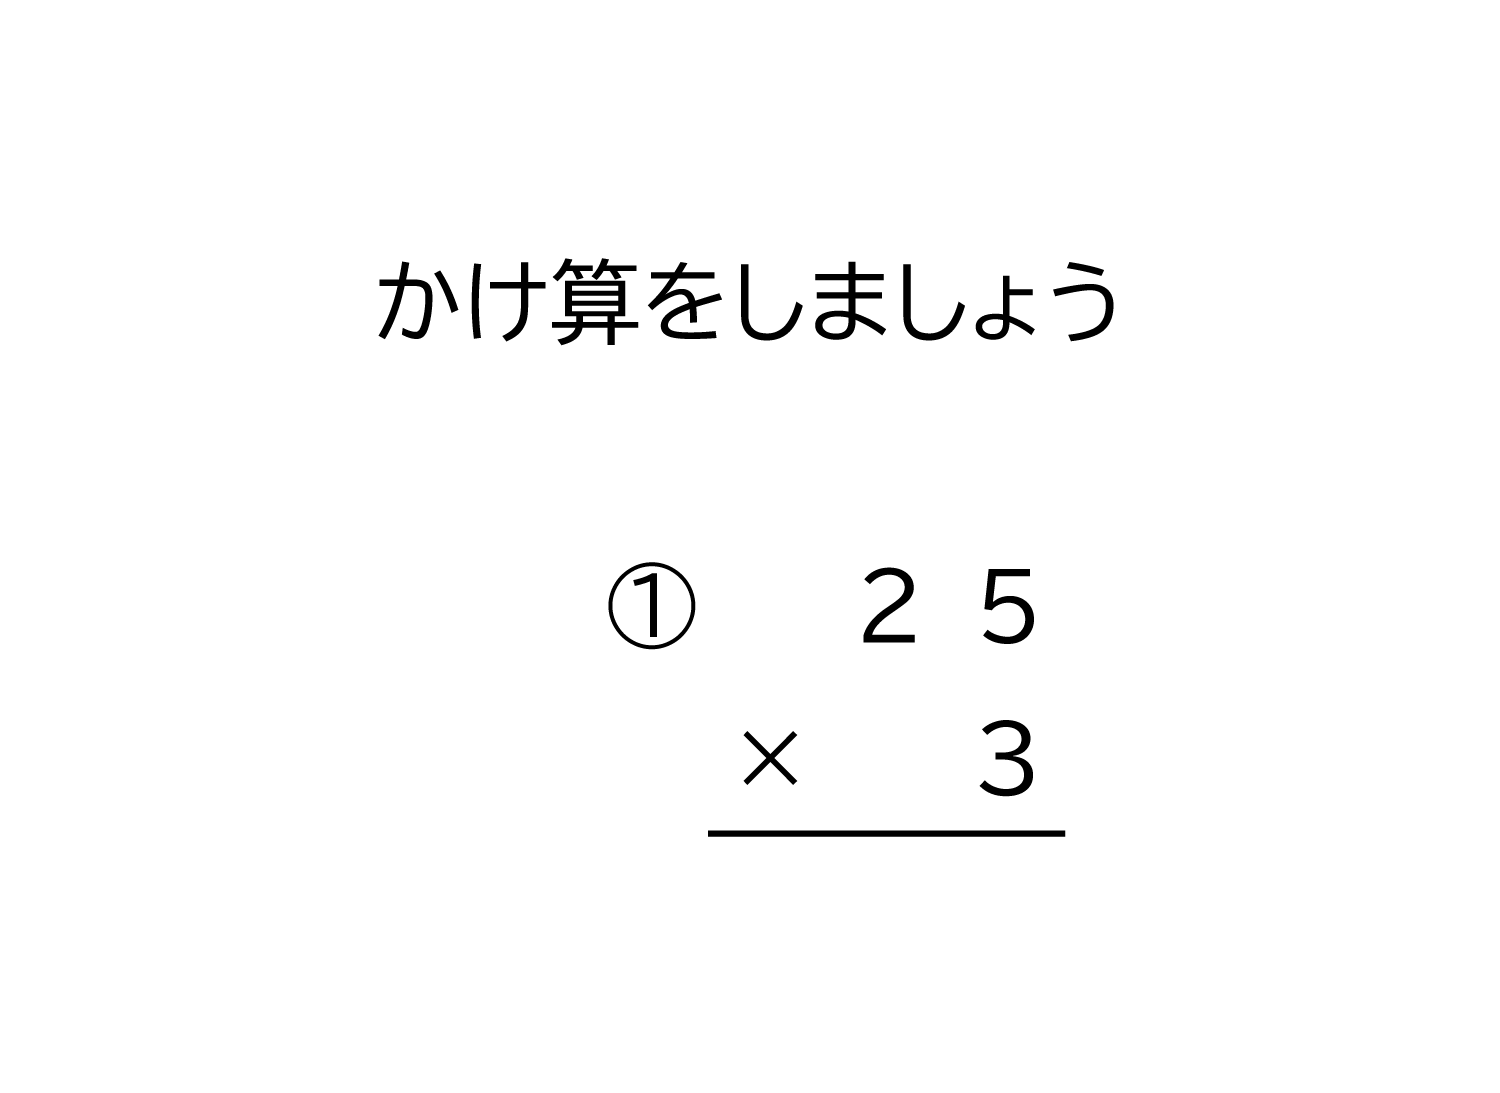 2桁×1桁の十の位に繰り上がる掛け算の筆算